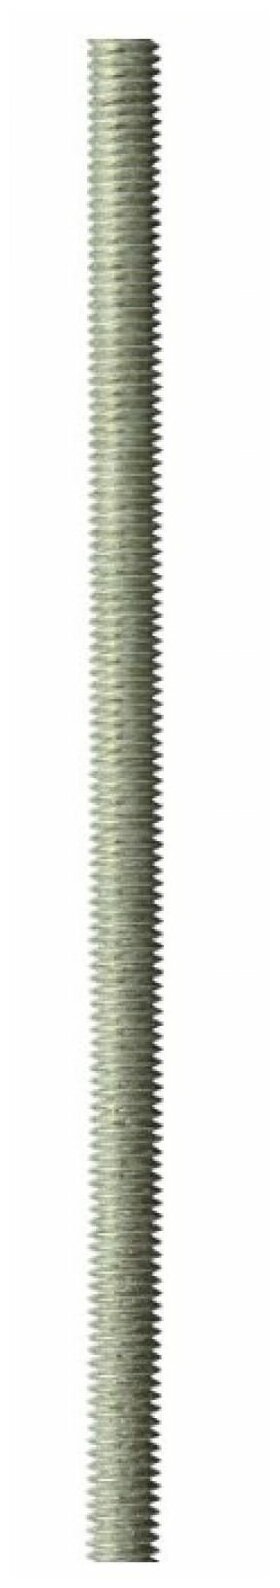 Шпилька резьбовая M10х1000 мм DIN 975 (10 шт)